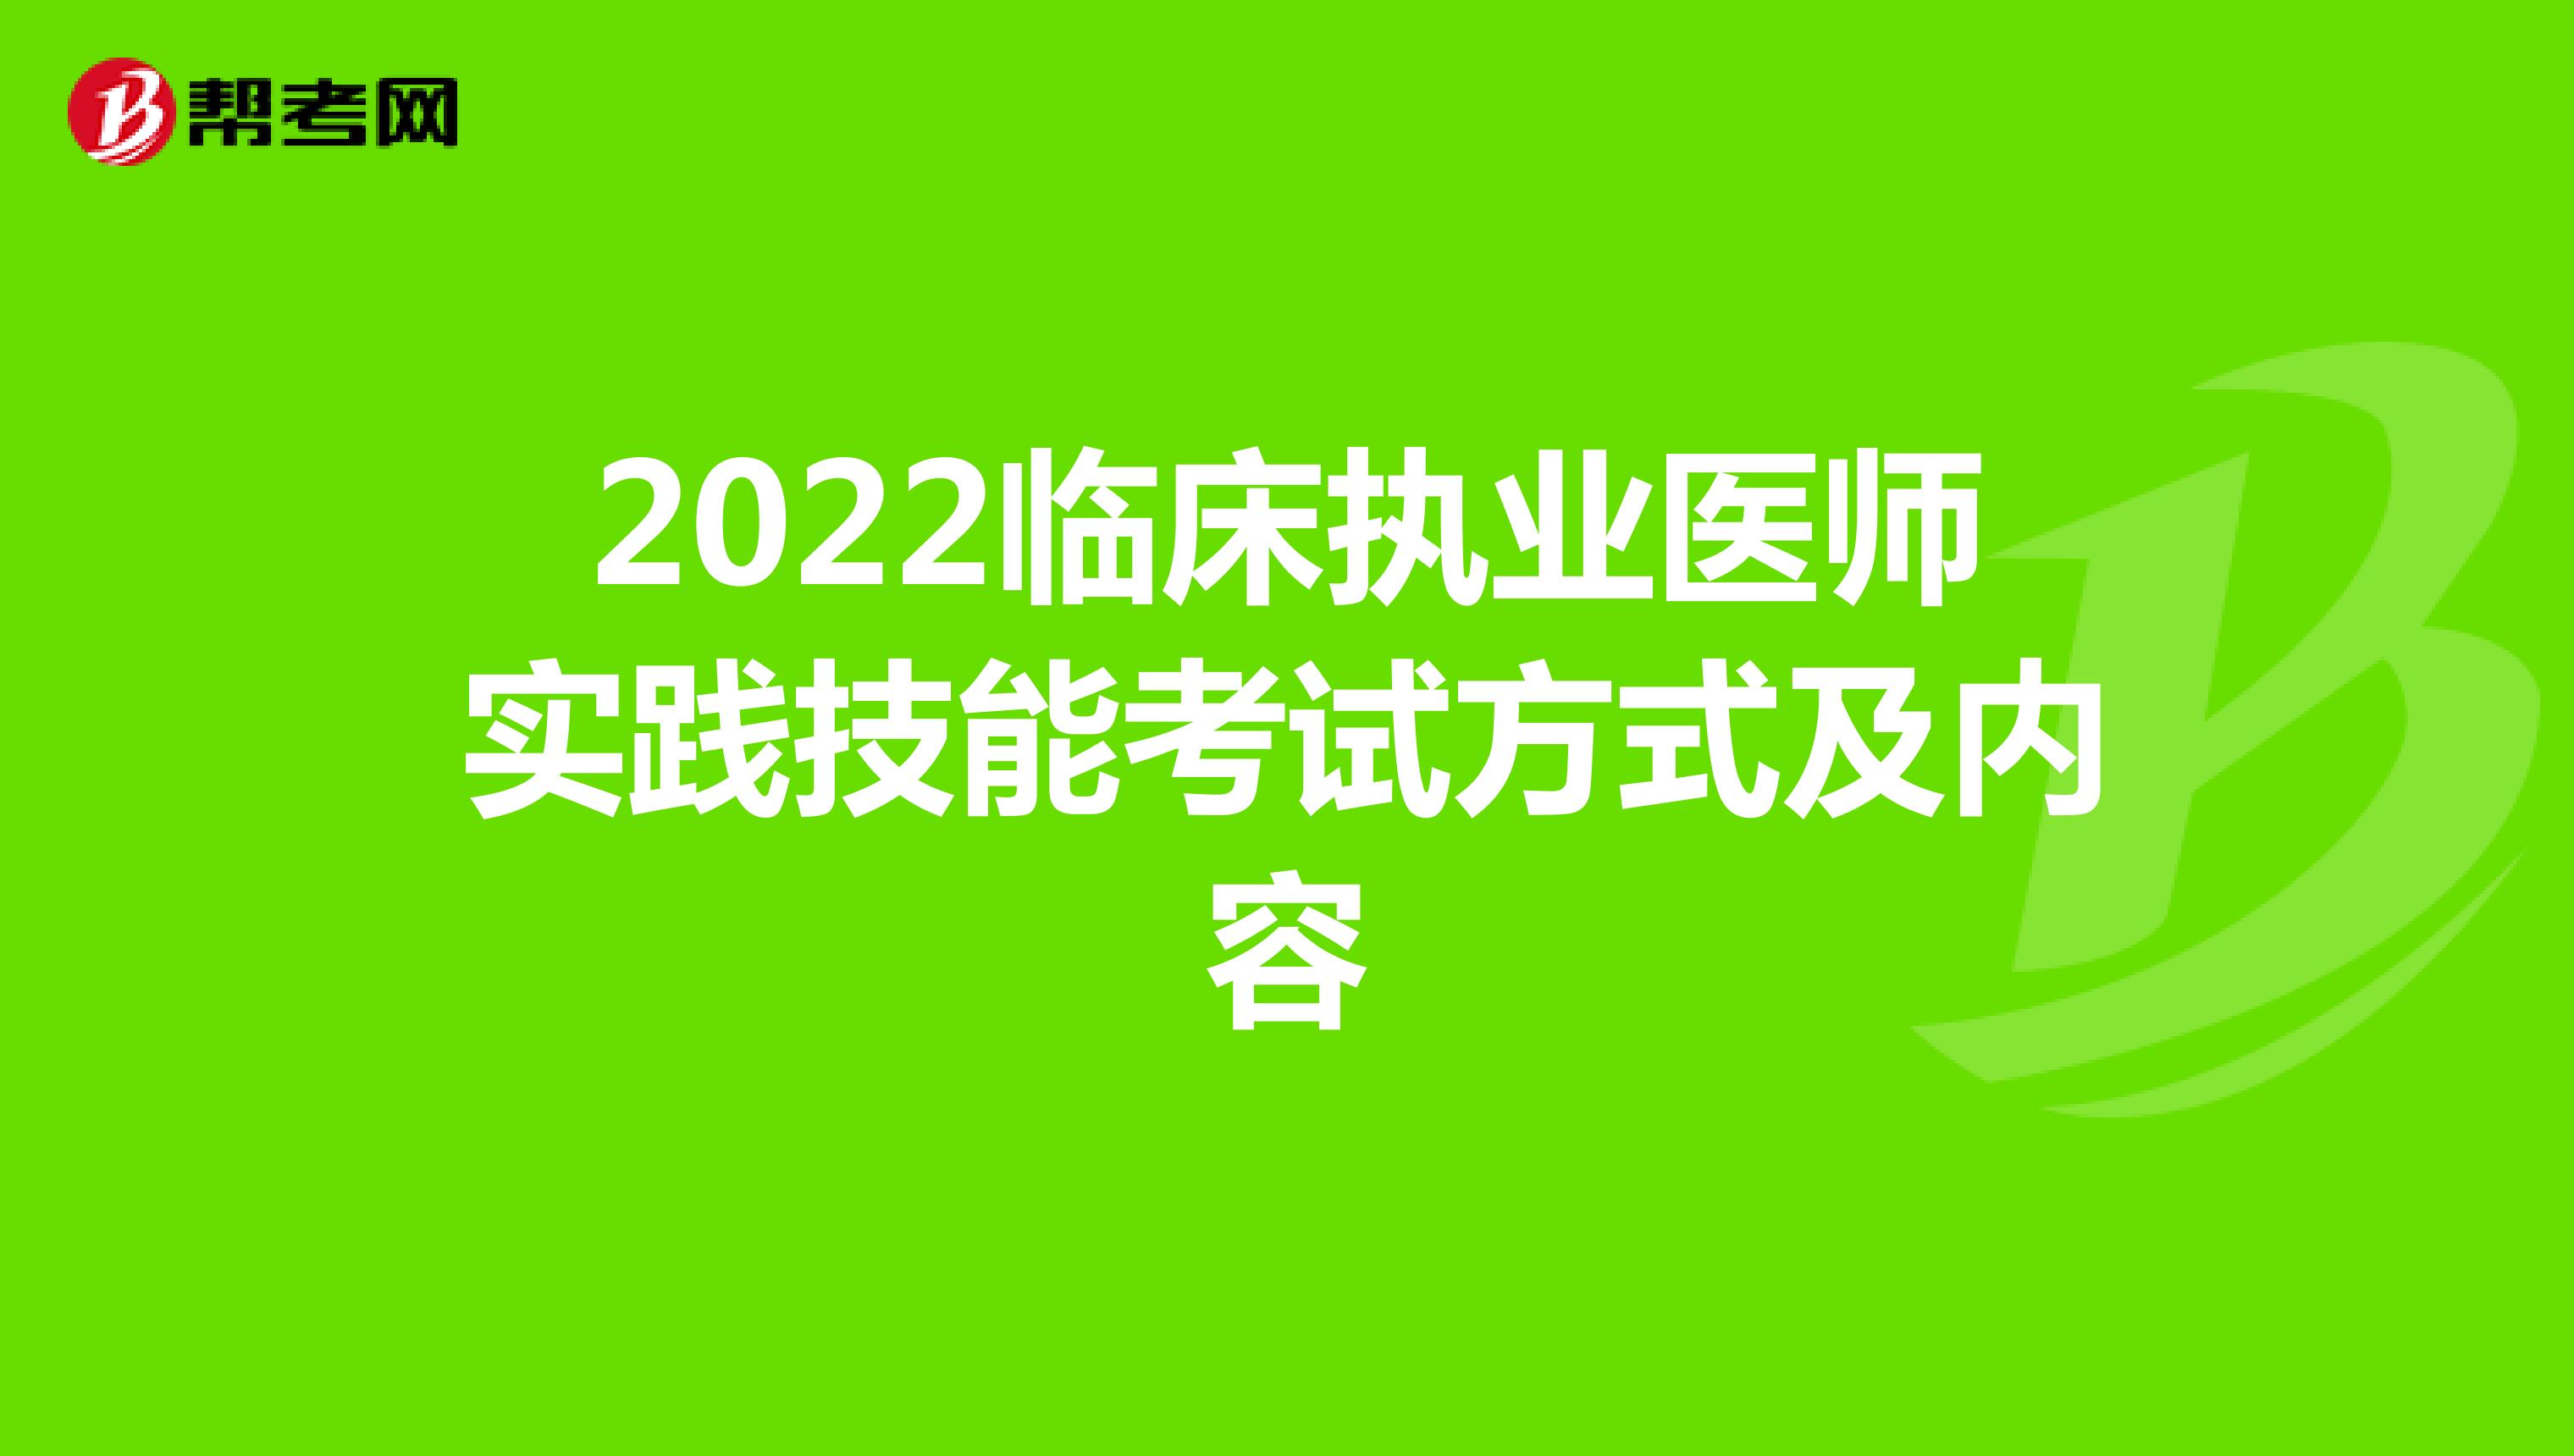 2022临床执业医师实践技能考试方式及内容